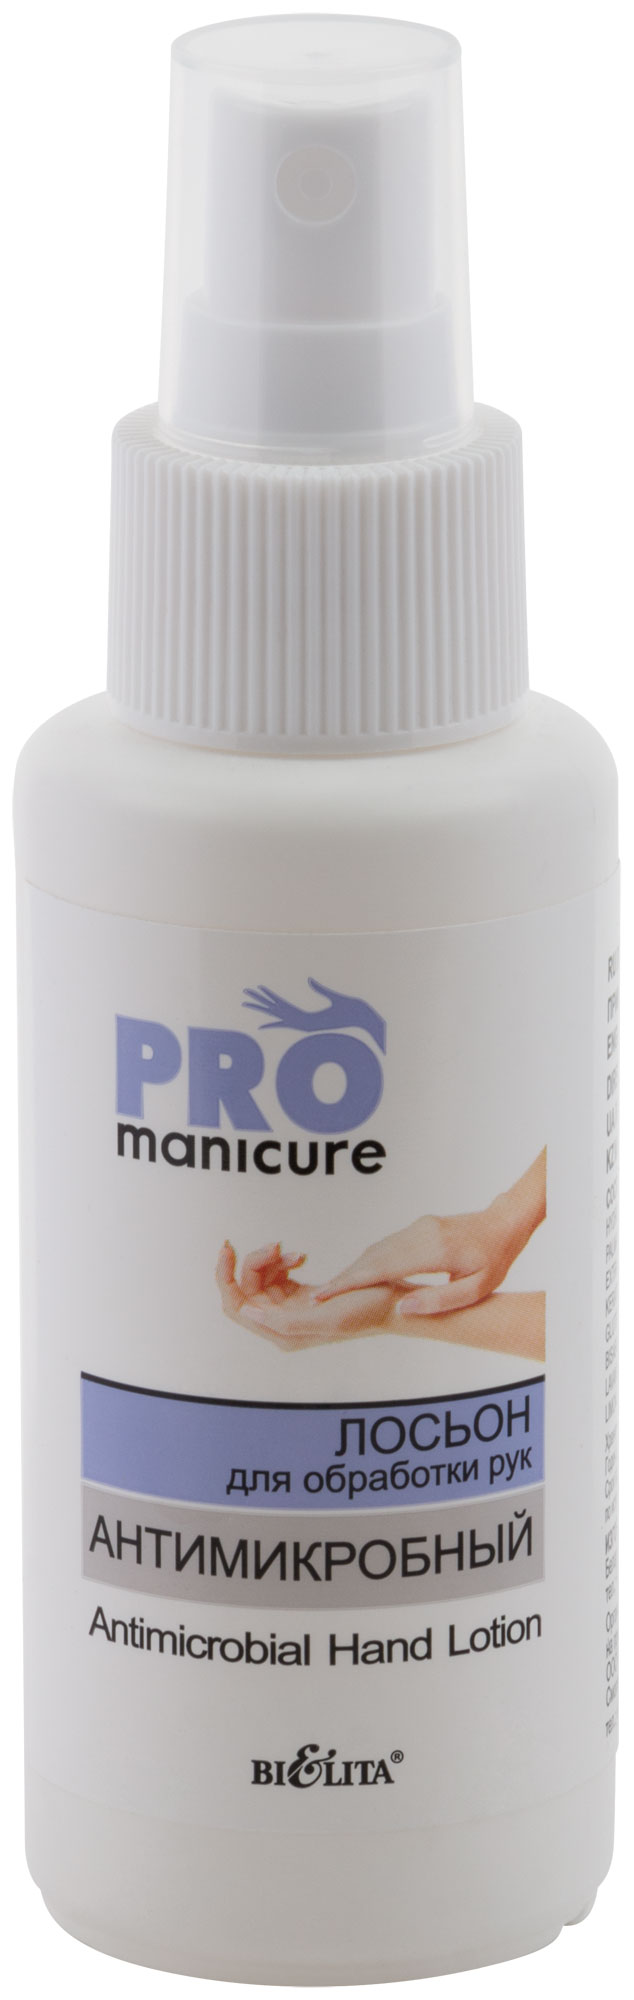 Лосьон Pro Manicure для обработки рук антимикробный, 80 мл